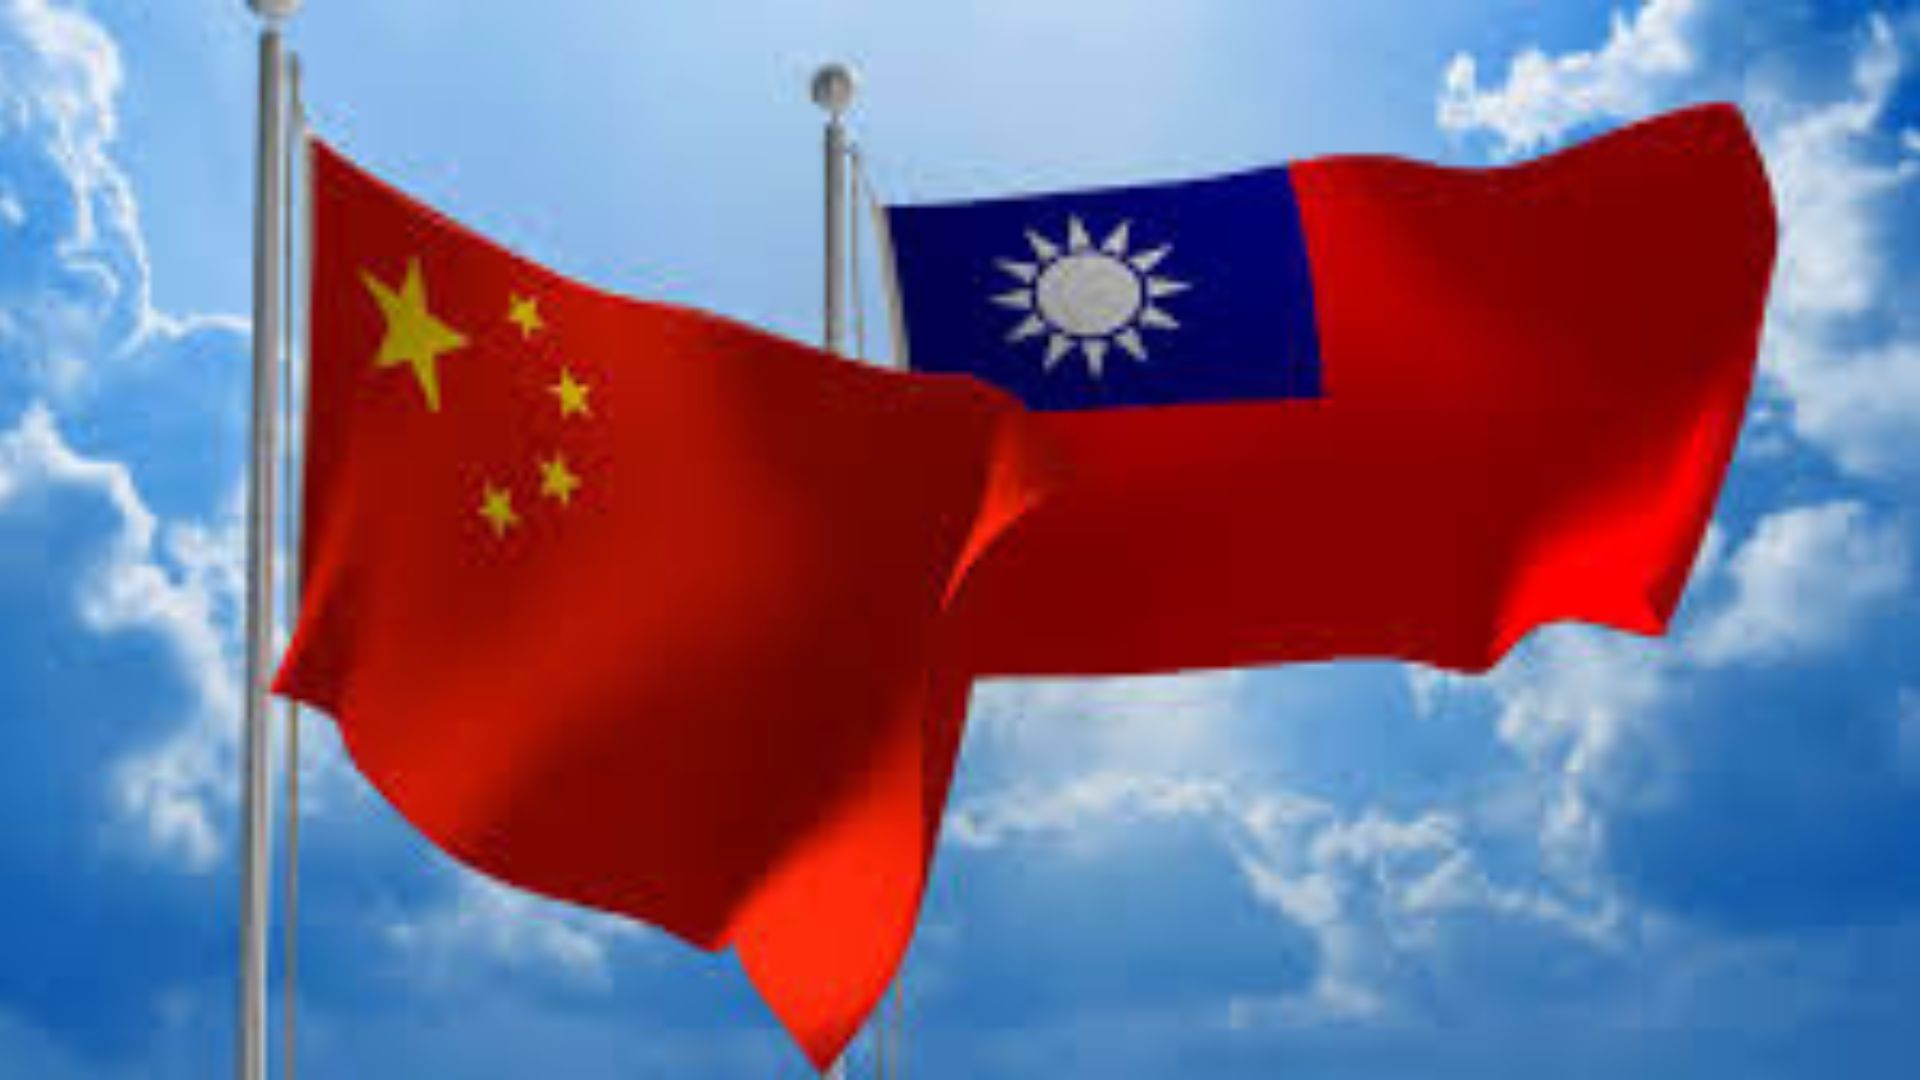 Propaganda Drop? Chinese Flyers Found on Taiwan’s Erdan Island